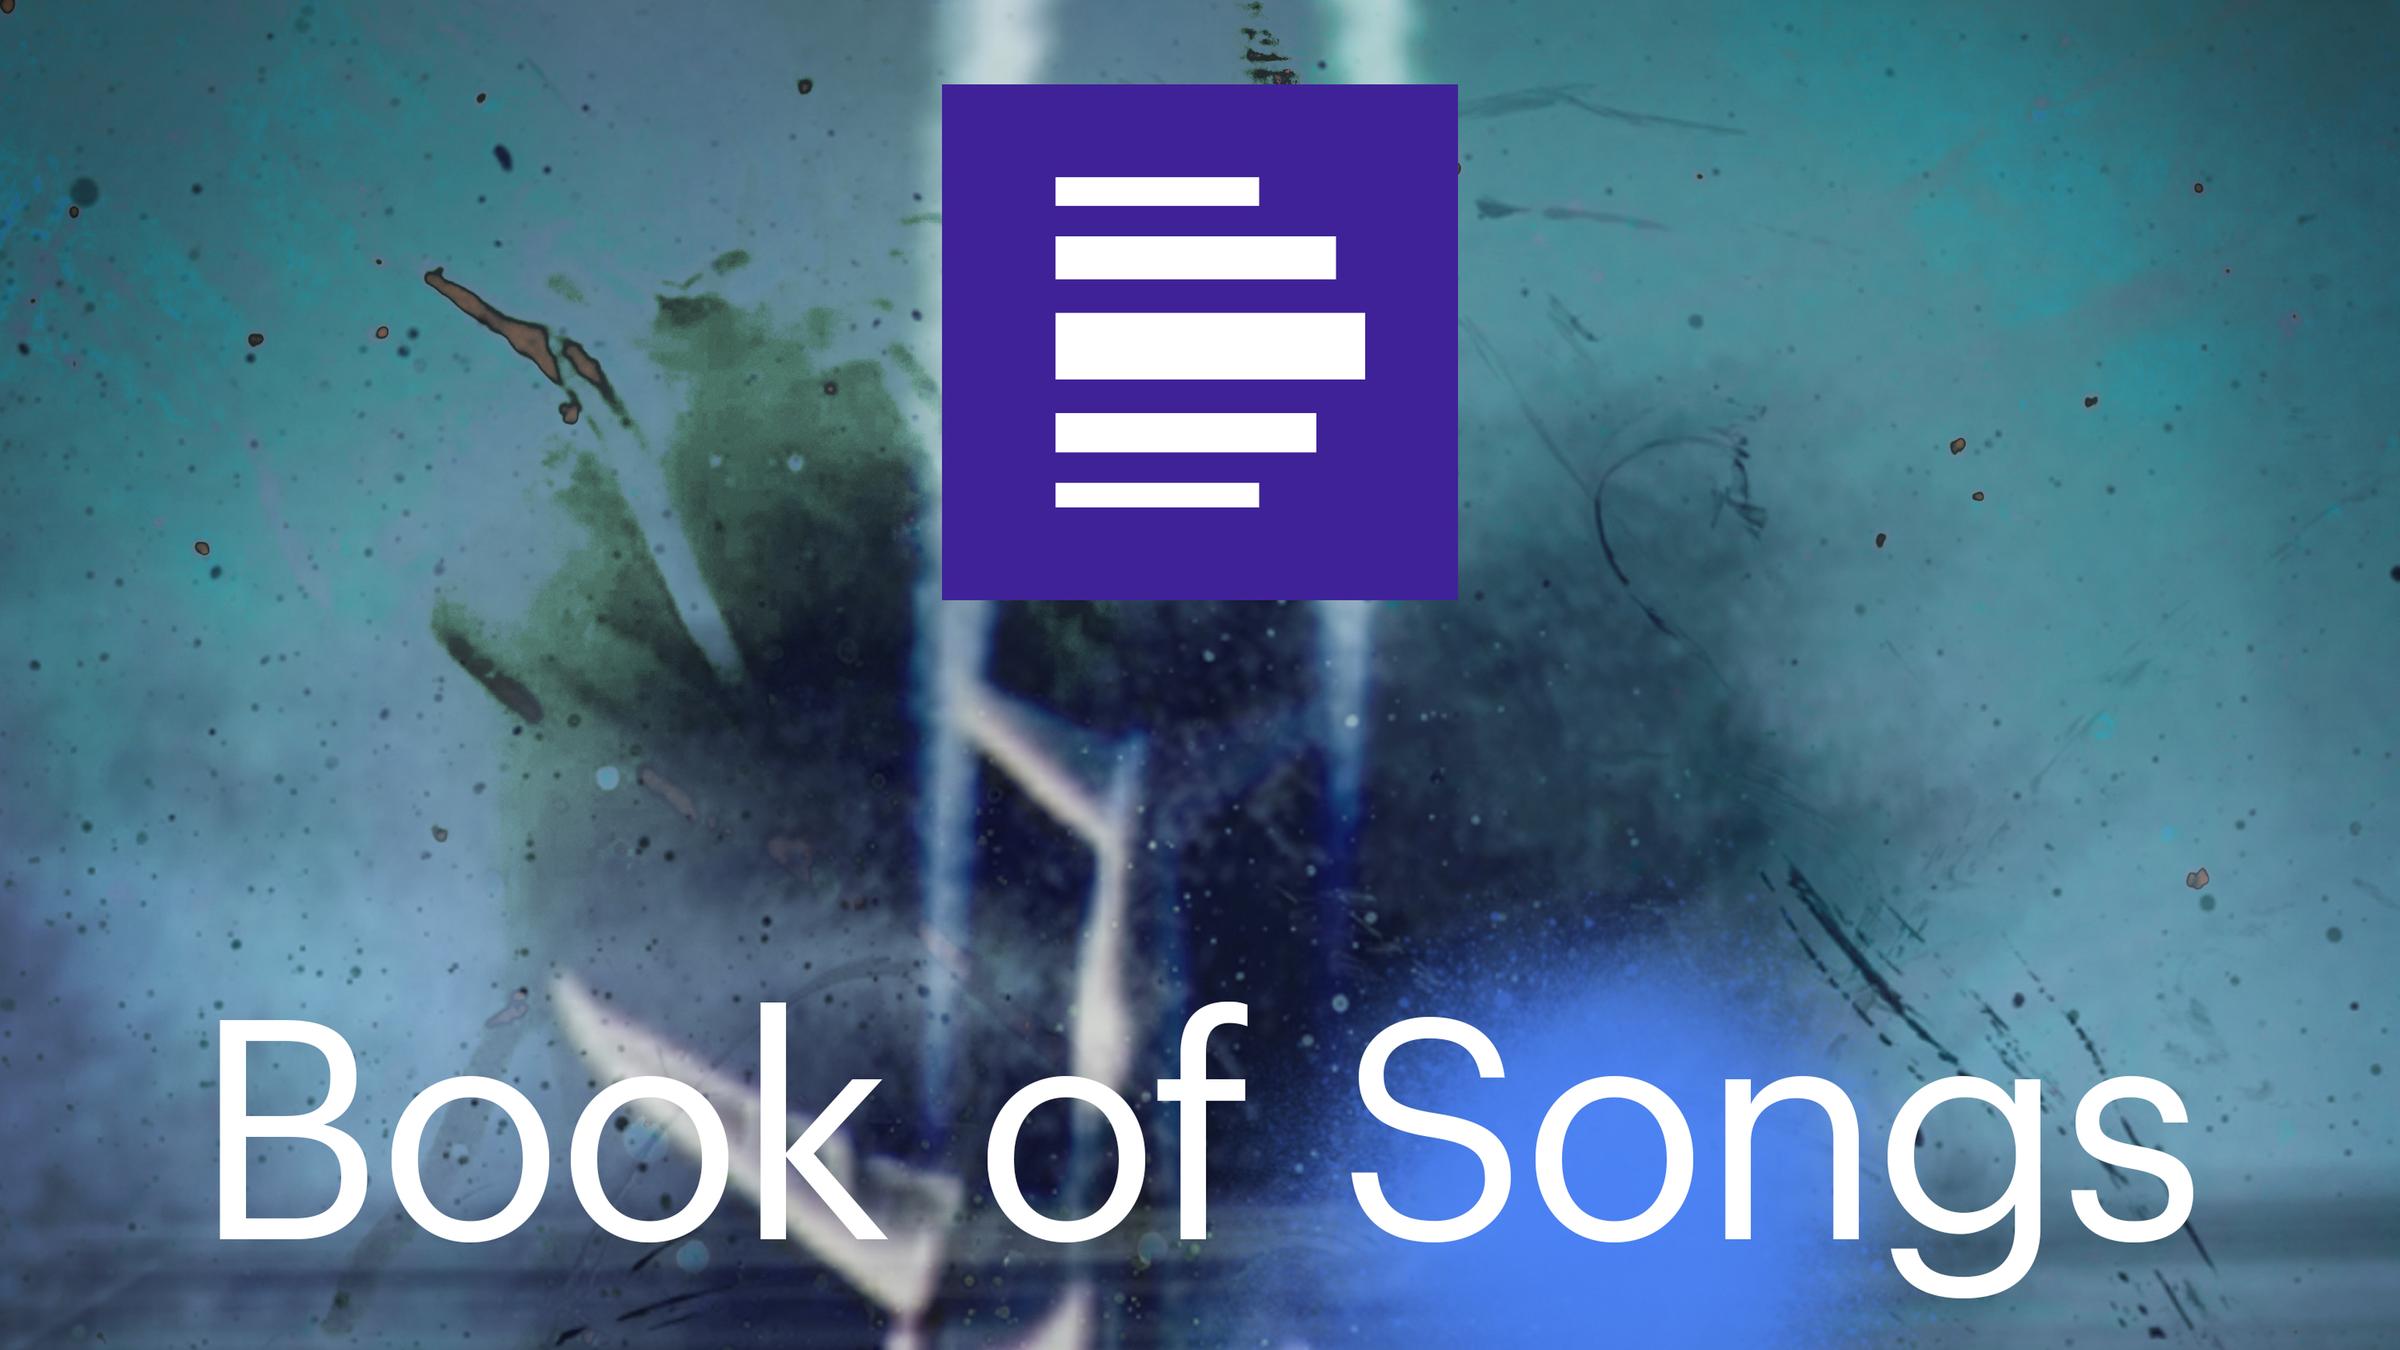 Das Podcast Cover Book of Songs zeigt ein verschwommenes Flugzeug auf blauem Hintergrund mit dem Senderlogo.